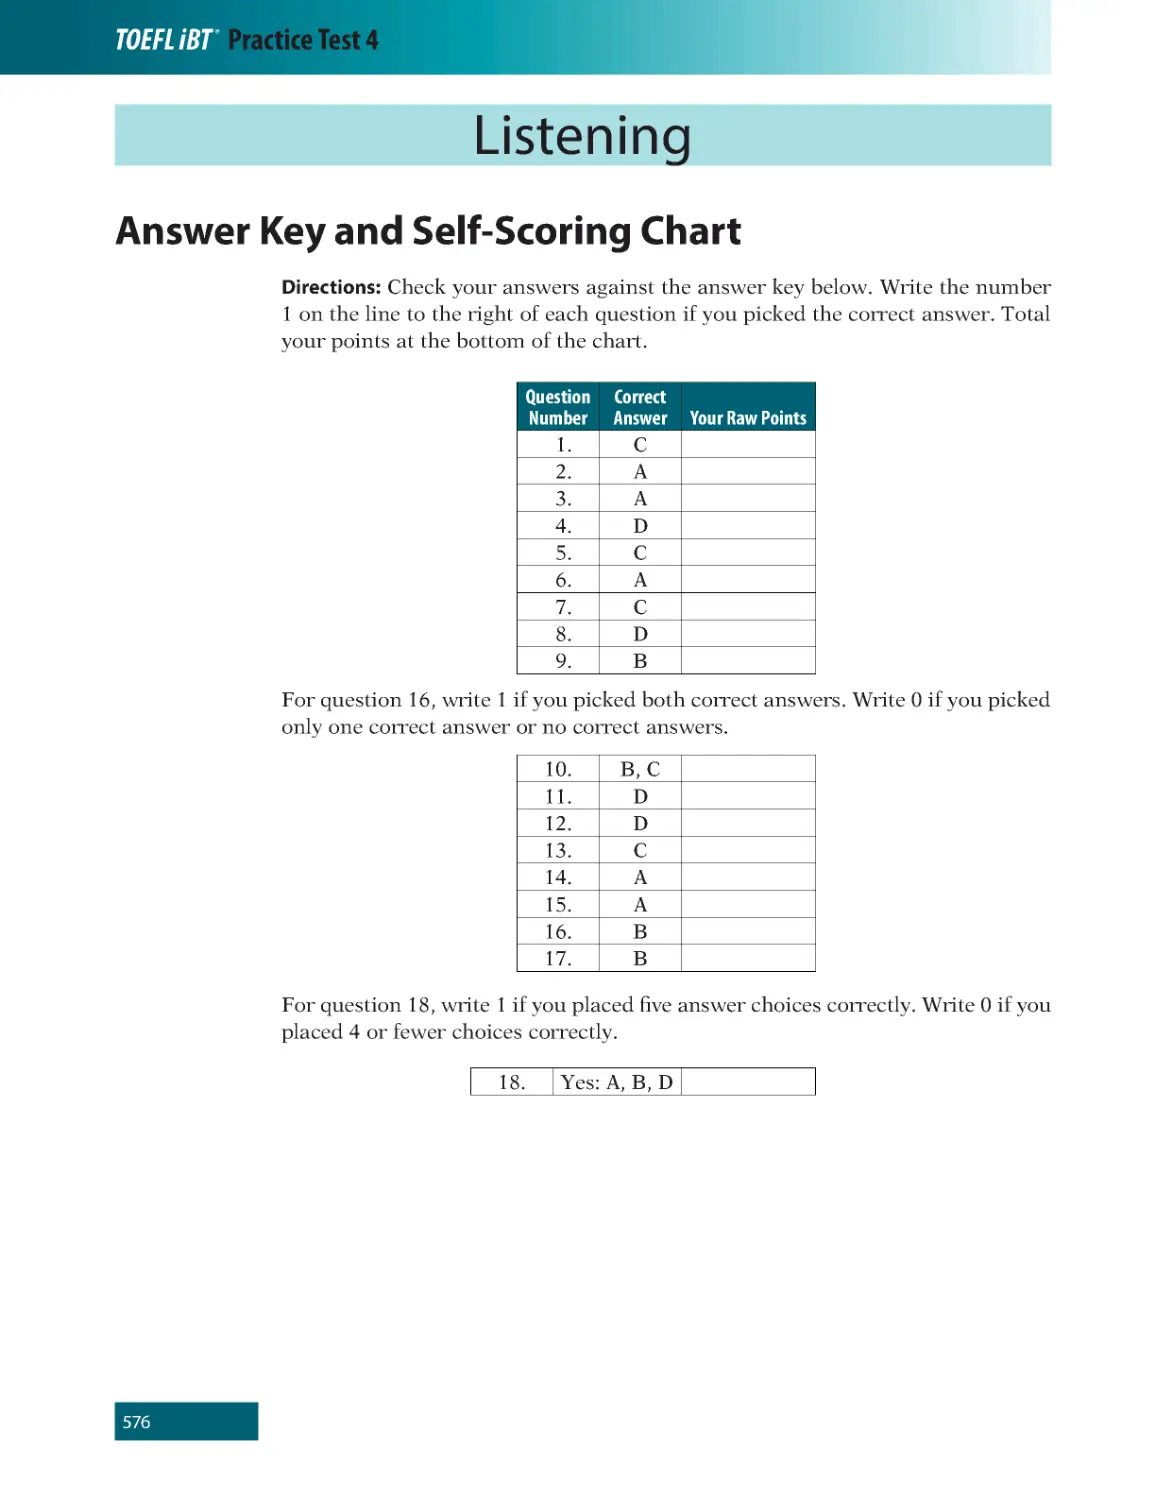 Listening
Answer Key and Self-Scoring Chart